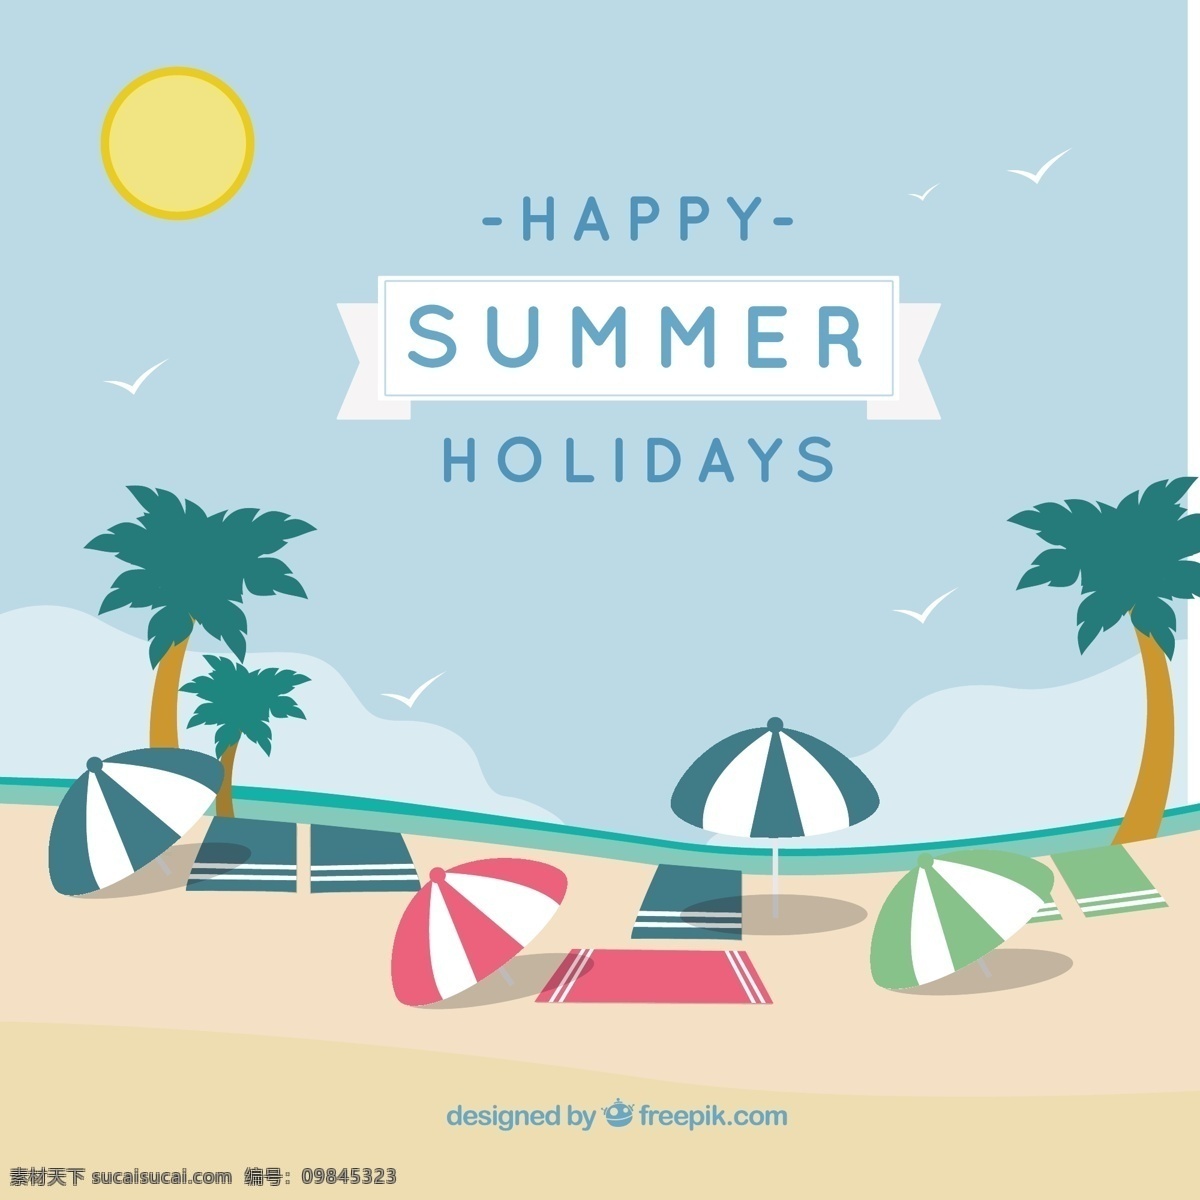 快乐暑假卡片 复古 海报 夏天 卡片 太阳 海滩 自然 海洋 天空 快乐 假期 伞 棕榈 旅游 度假 快乐的假期 放松 夏日海滩 假日 青色 天蓝色